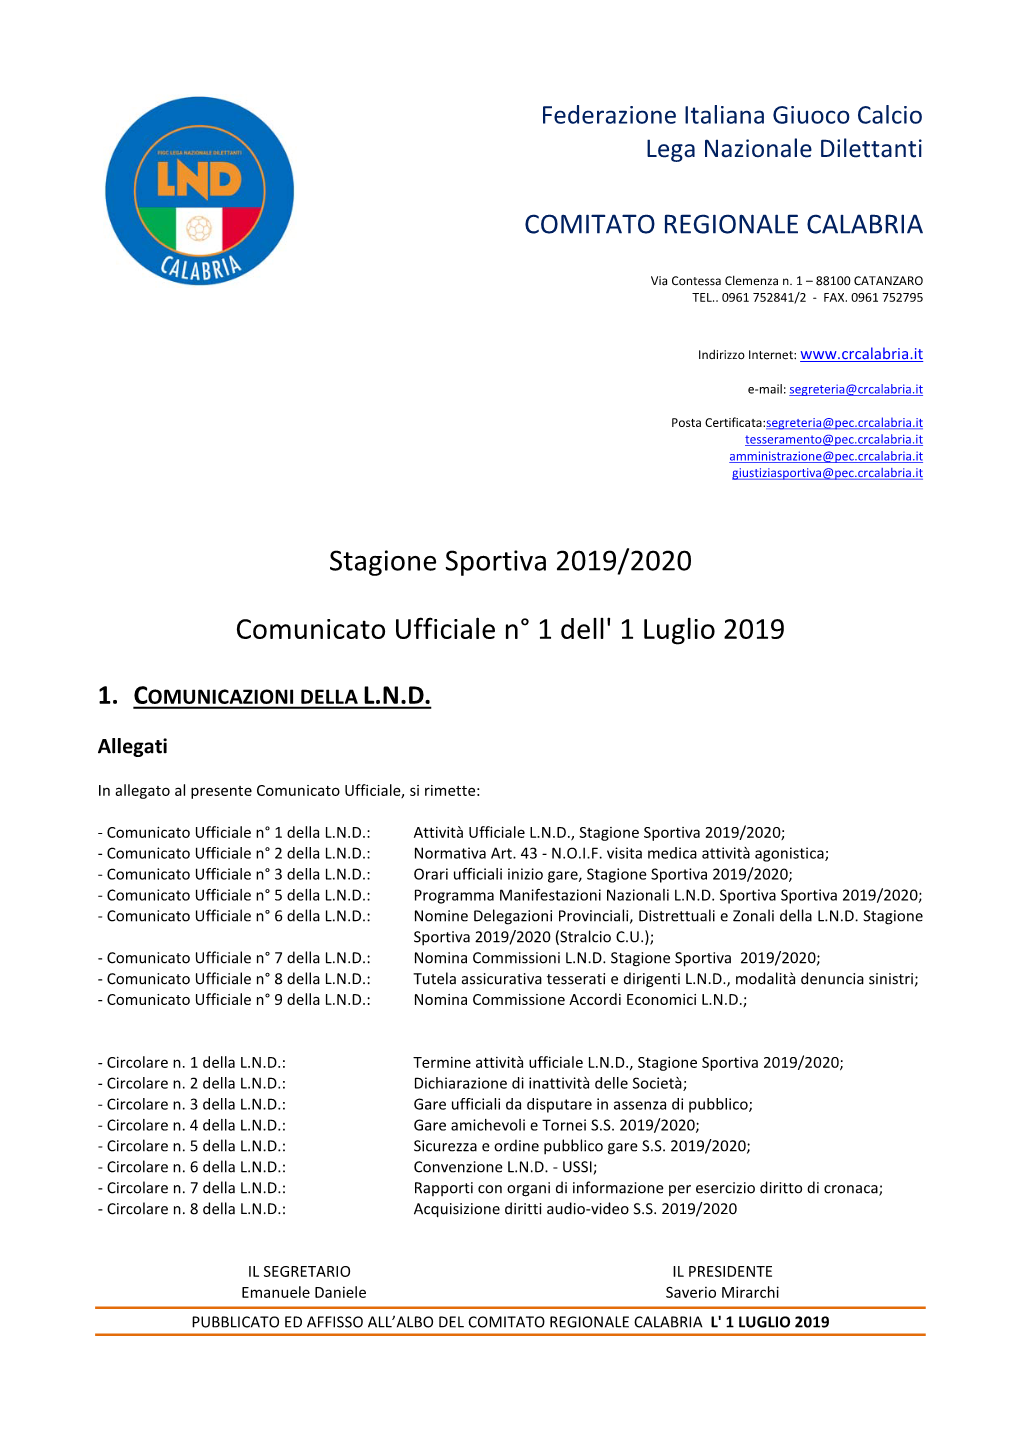 Stagione Sportiva 2019/2020 Comunicato Ufficiale N° 1 Dell' 1